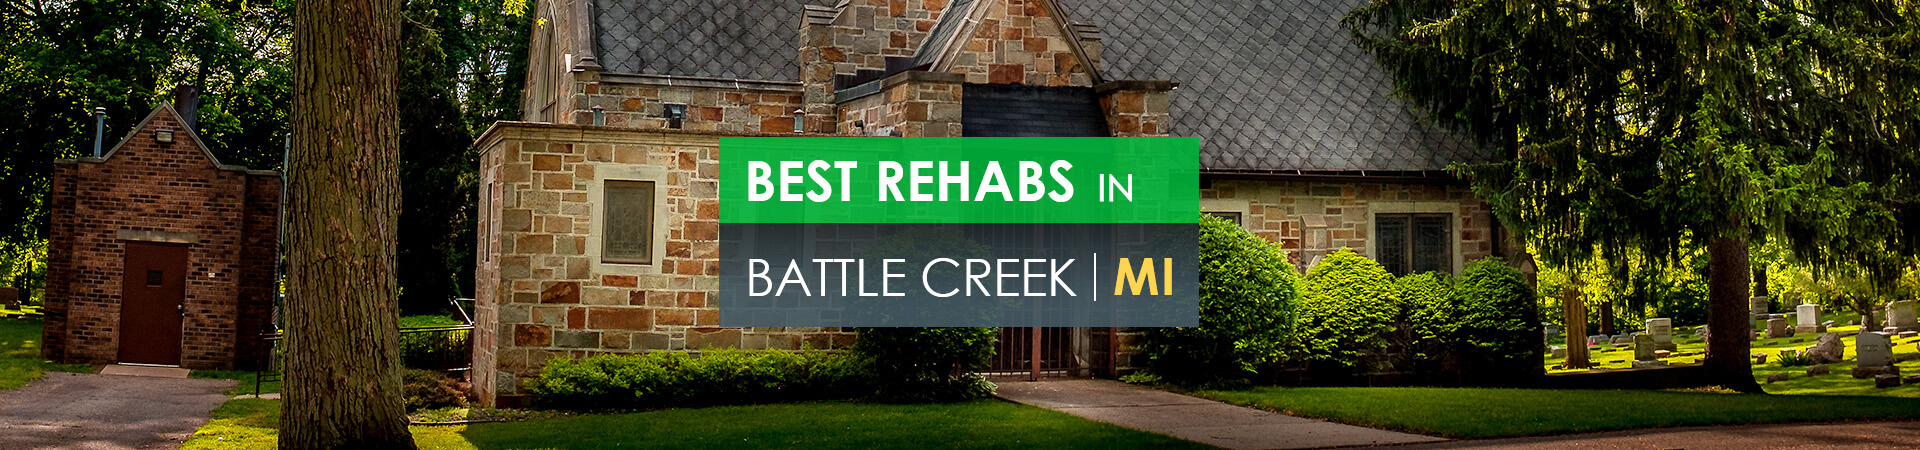 Best rehabs in Battle Creek, MI